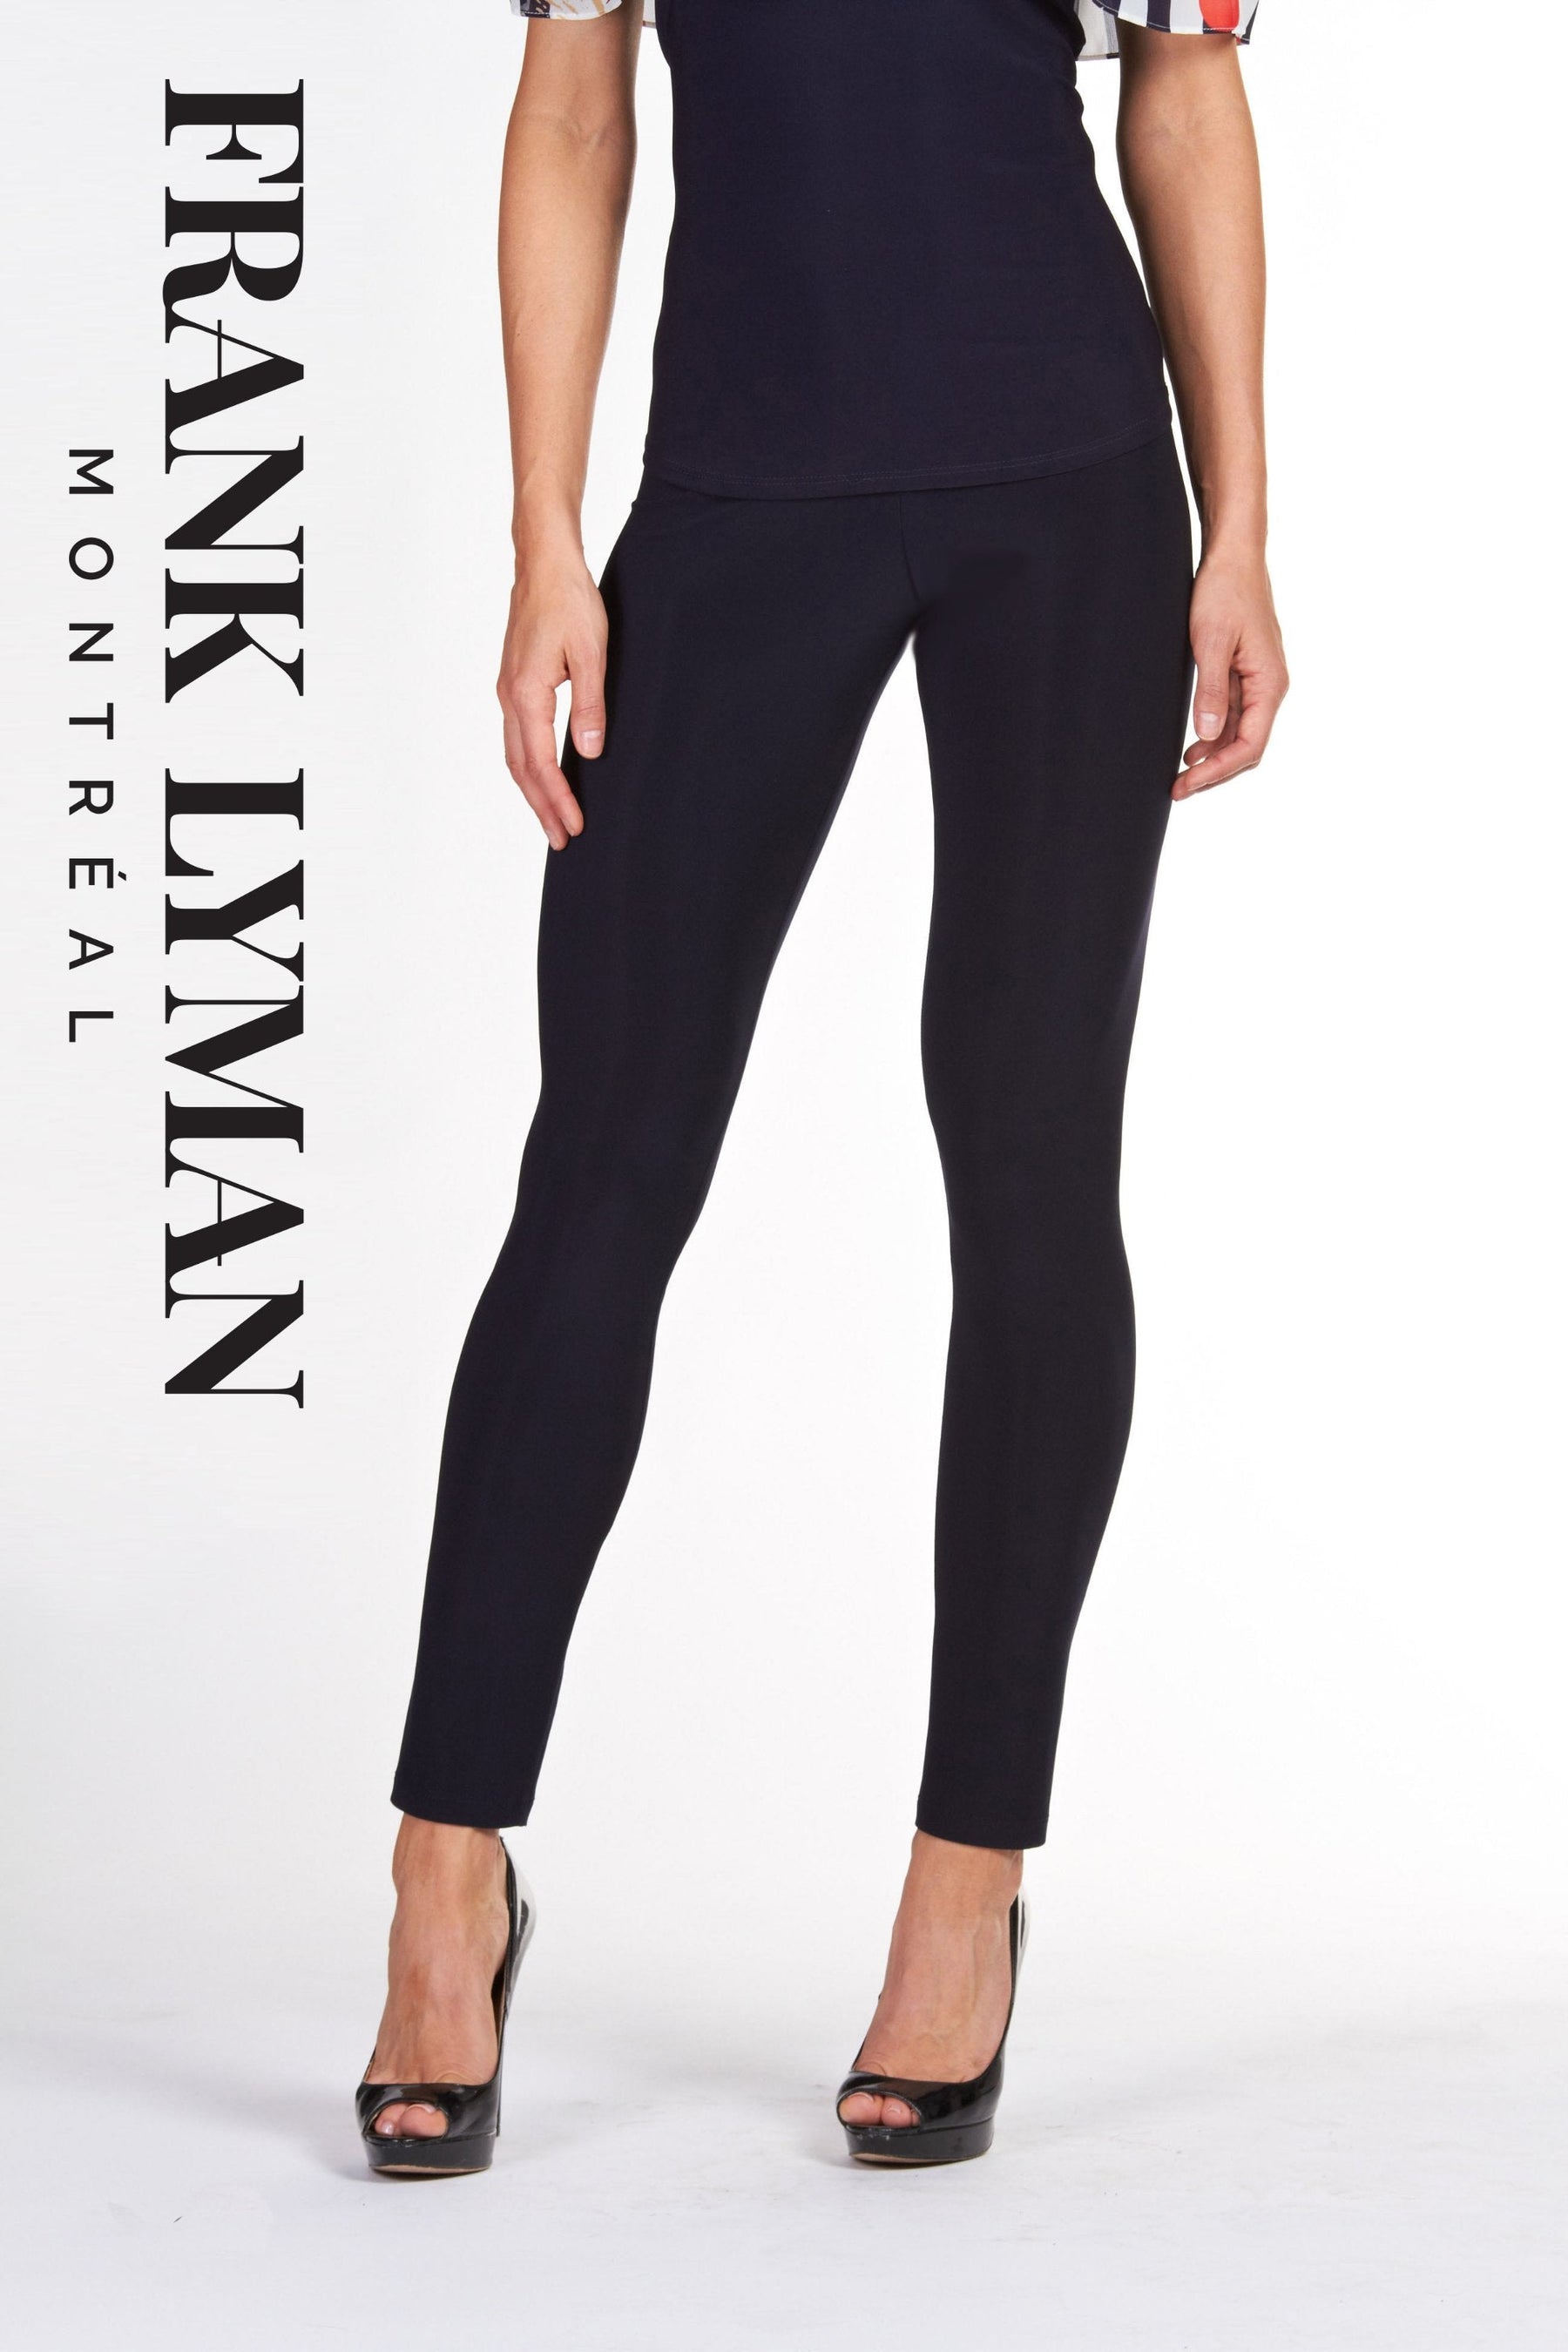 Pantalon en Knit Frank Lyman - 002 BLACK - Boutique Vvög, référence en mode pour homme et femme